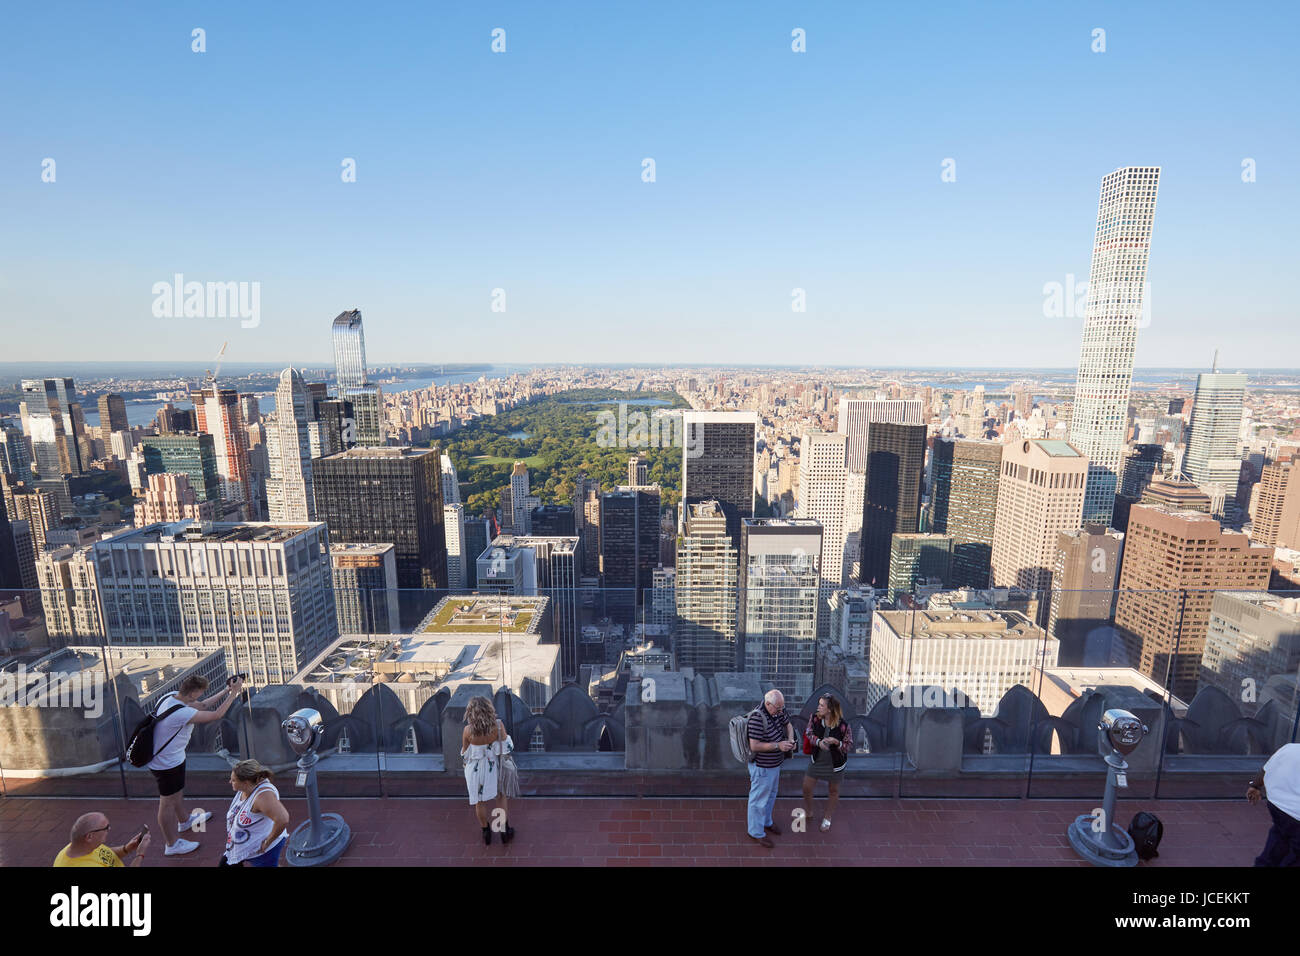 NEW YORK - 12 SEPTEMBRE : terrasse d'observation du Rockefeller Center avec vue sur les gens, Central Park et la ville par une journée ensoleillée le 12 septembre 2016 Banque D'Images